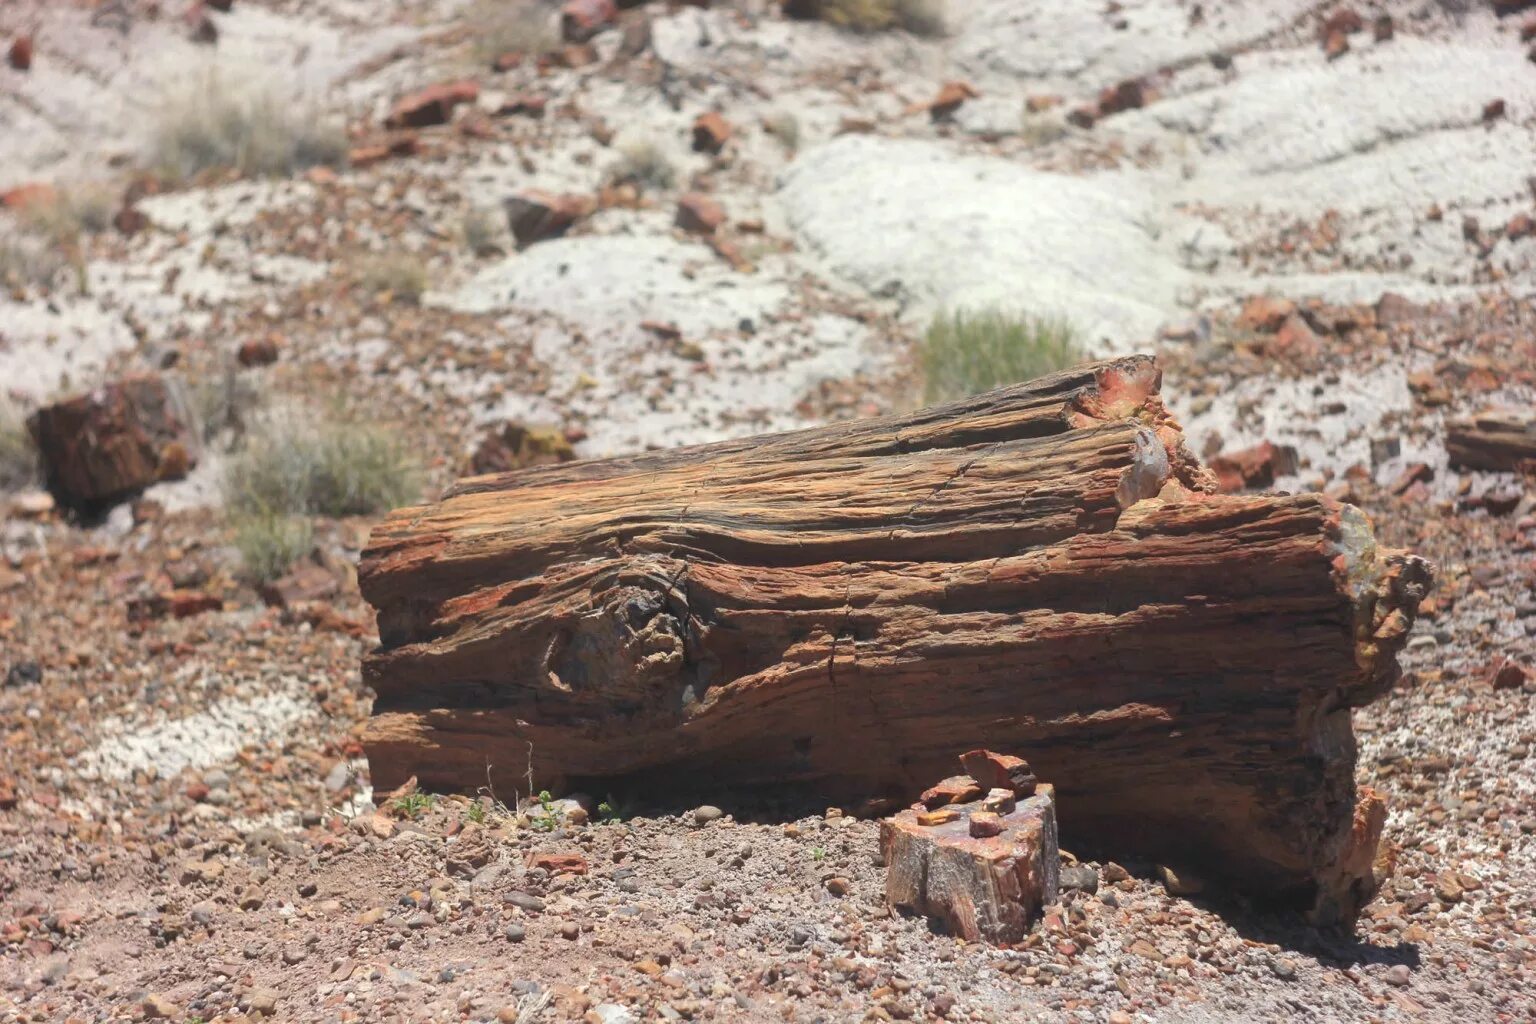 Окаменевшая хвойная. Окаменелые деревья в Аризоне. Окаменелое дерево.(Petrified Wood).. Каменное дерево Арчединско. Окаменевший лес Петрифайд-Форест, США.